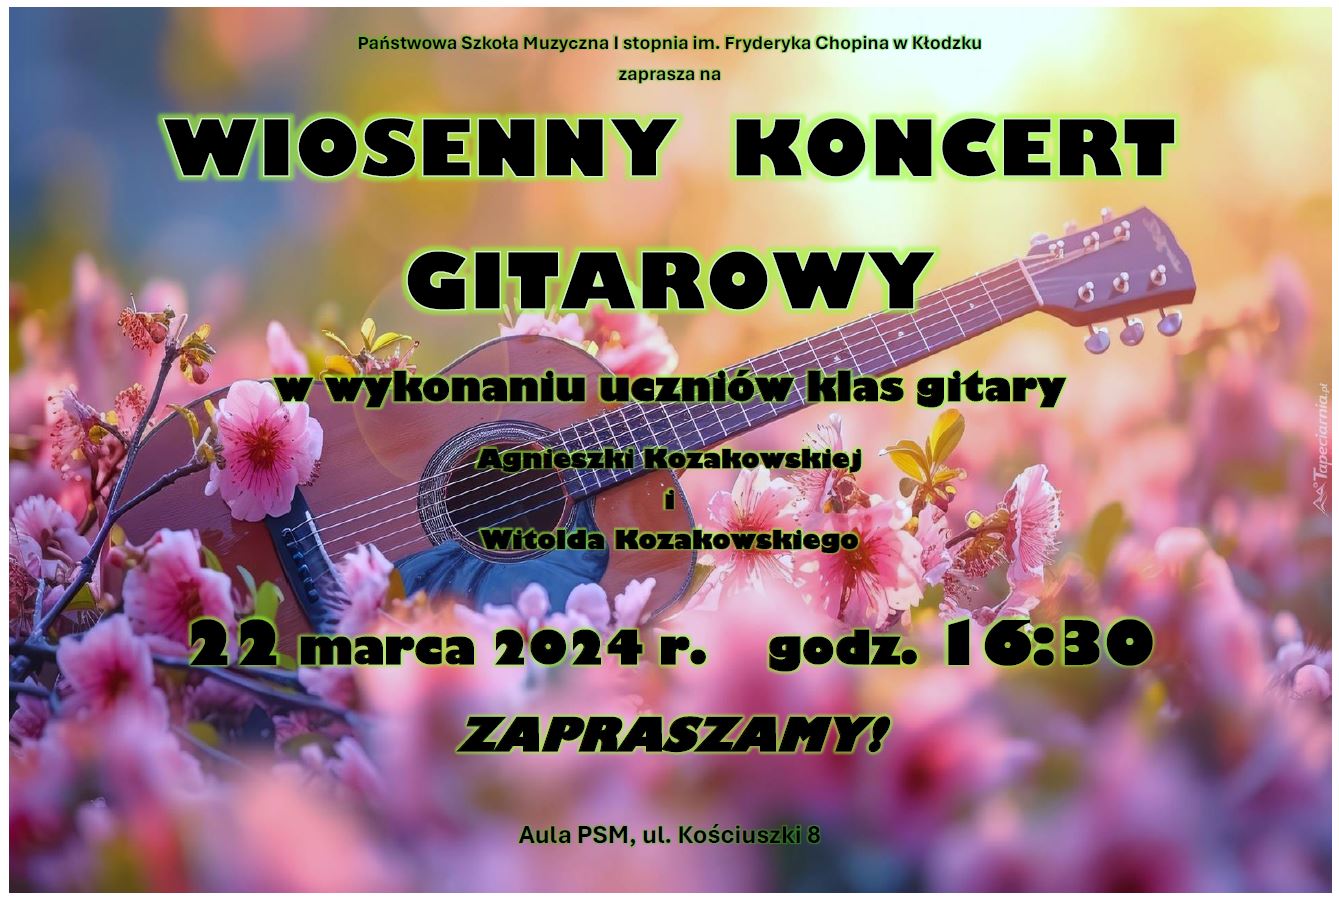 Plakat na kolorowym tle z grafiką gitary oraz kwiatów z informacją tekstowa dotyczącą Wiosennego Koncertu Gitarowego uczniów klas gitary A. Kozakowskiej i W. Kozakowskiego - 22 marca 2024